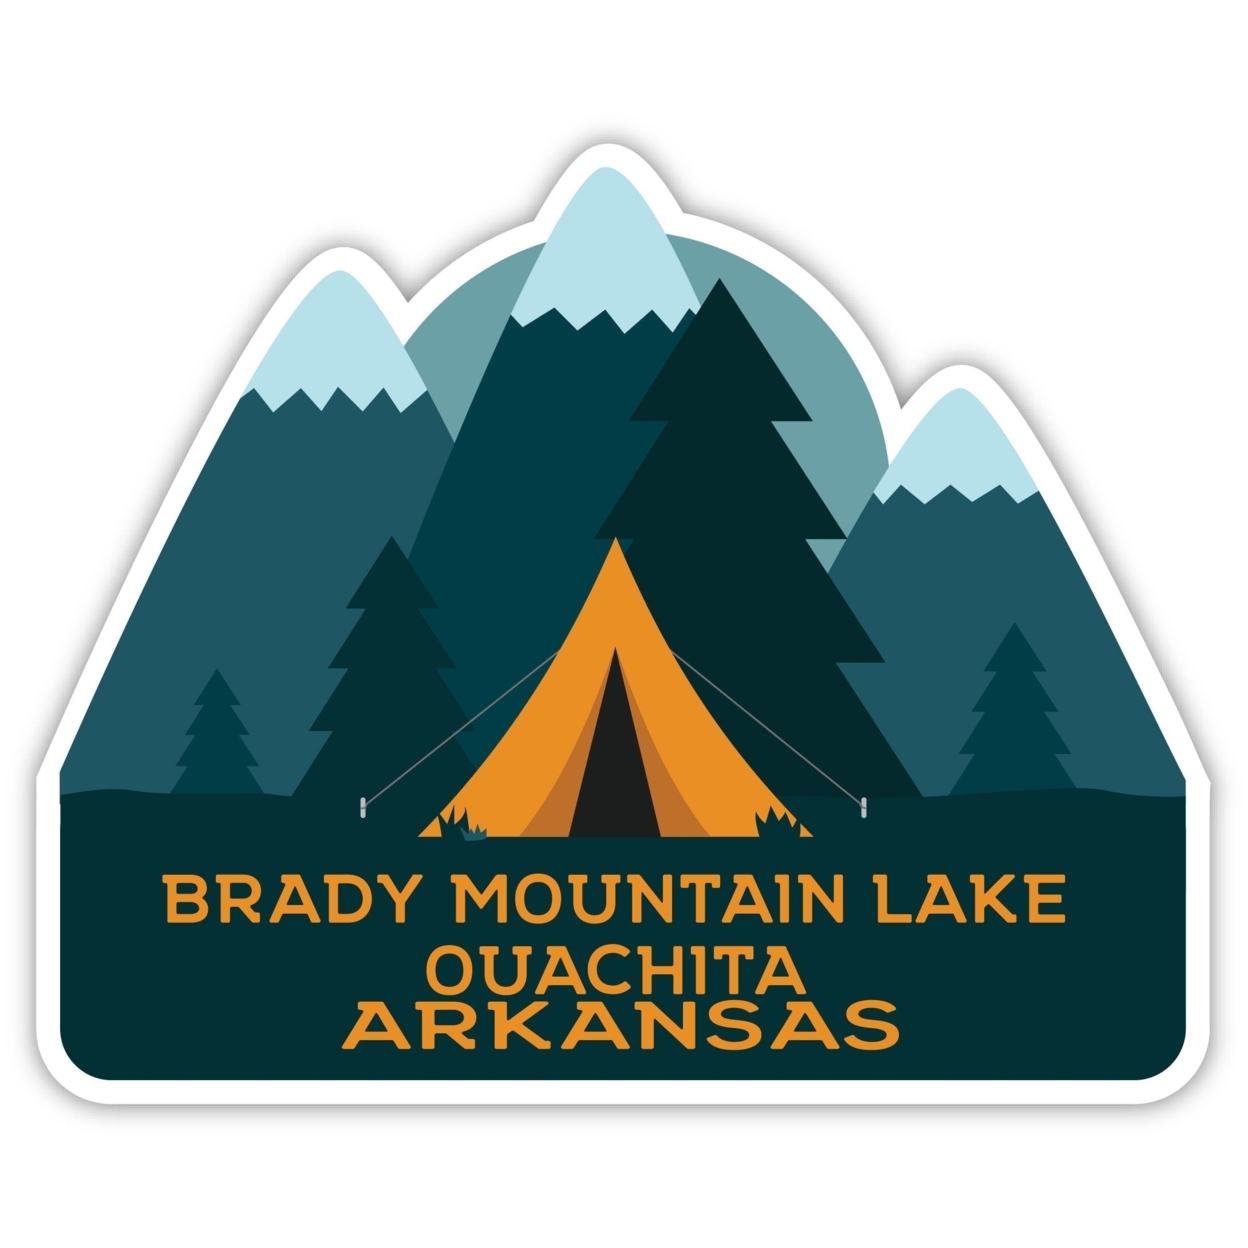 Brady Mountain Lake Ouachita Arkansas Souvenir Decorative Stickers (Choose Theme And Size) - 4-Pack, 12-Inch, Tent